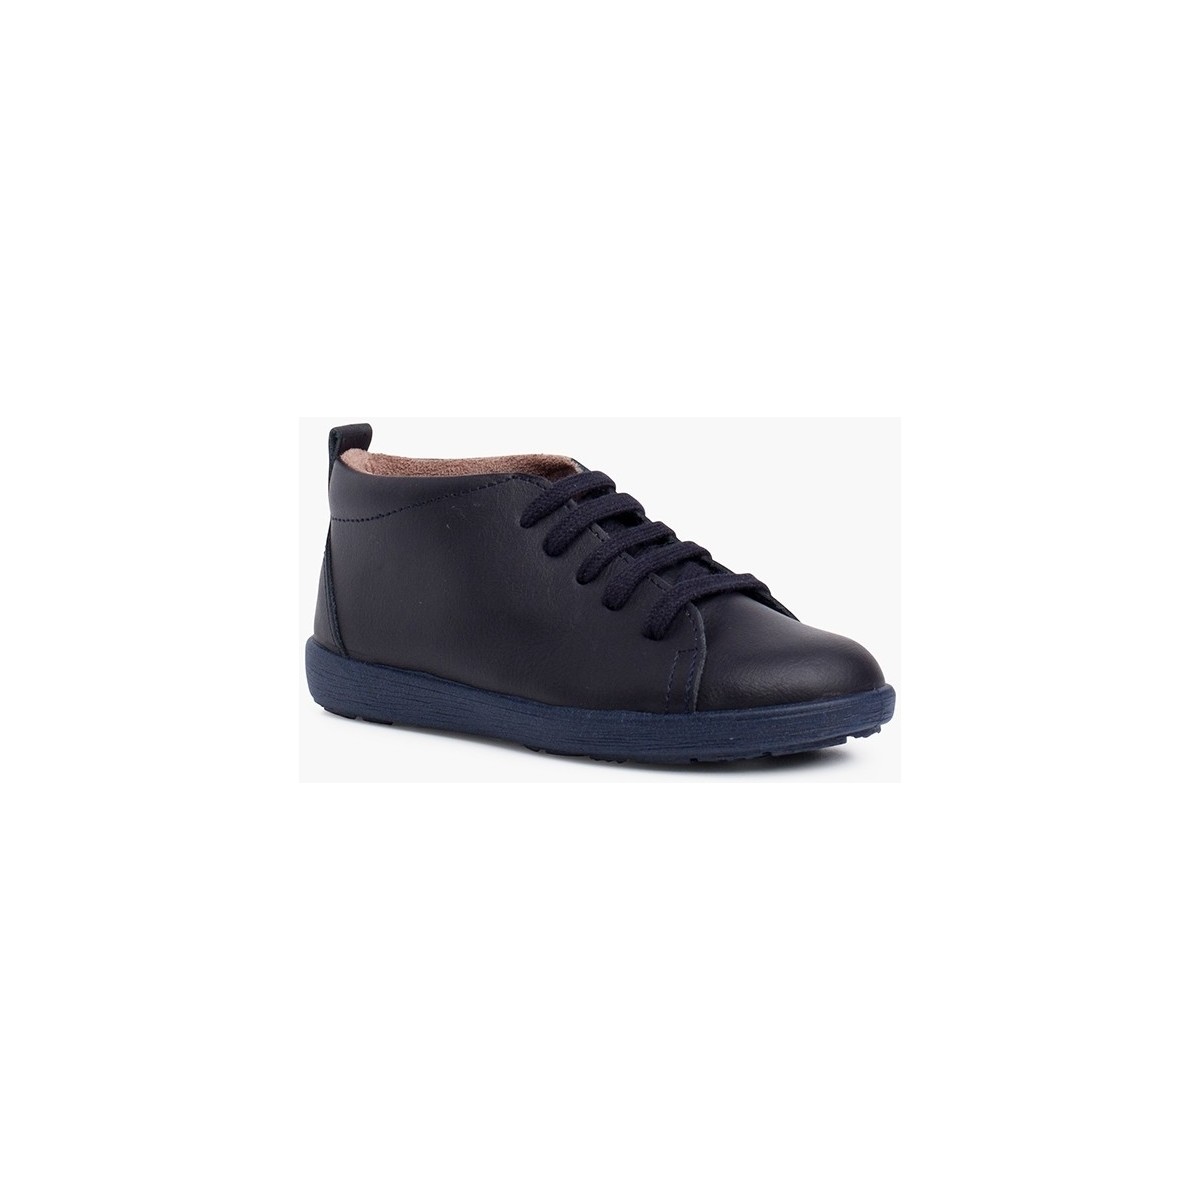 Pisamonas Bleu Type de chaussures en cuir : bottines Pisacacas Bq3xs8K5